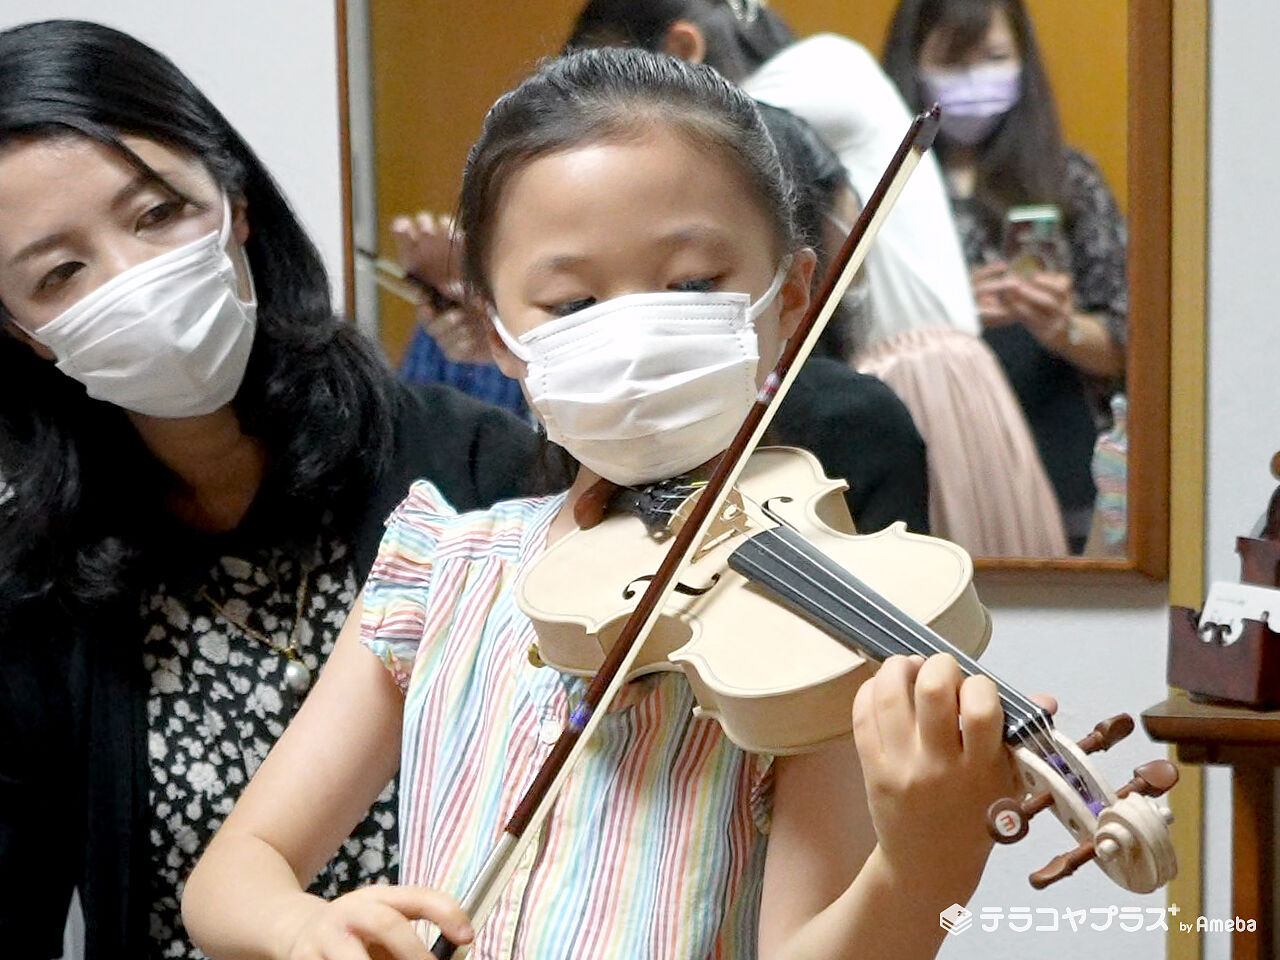 バイオリンを弾いている女の子